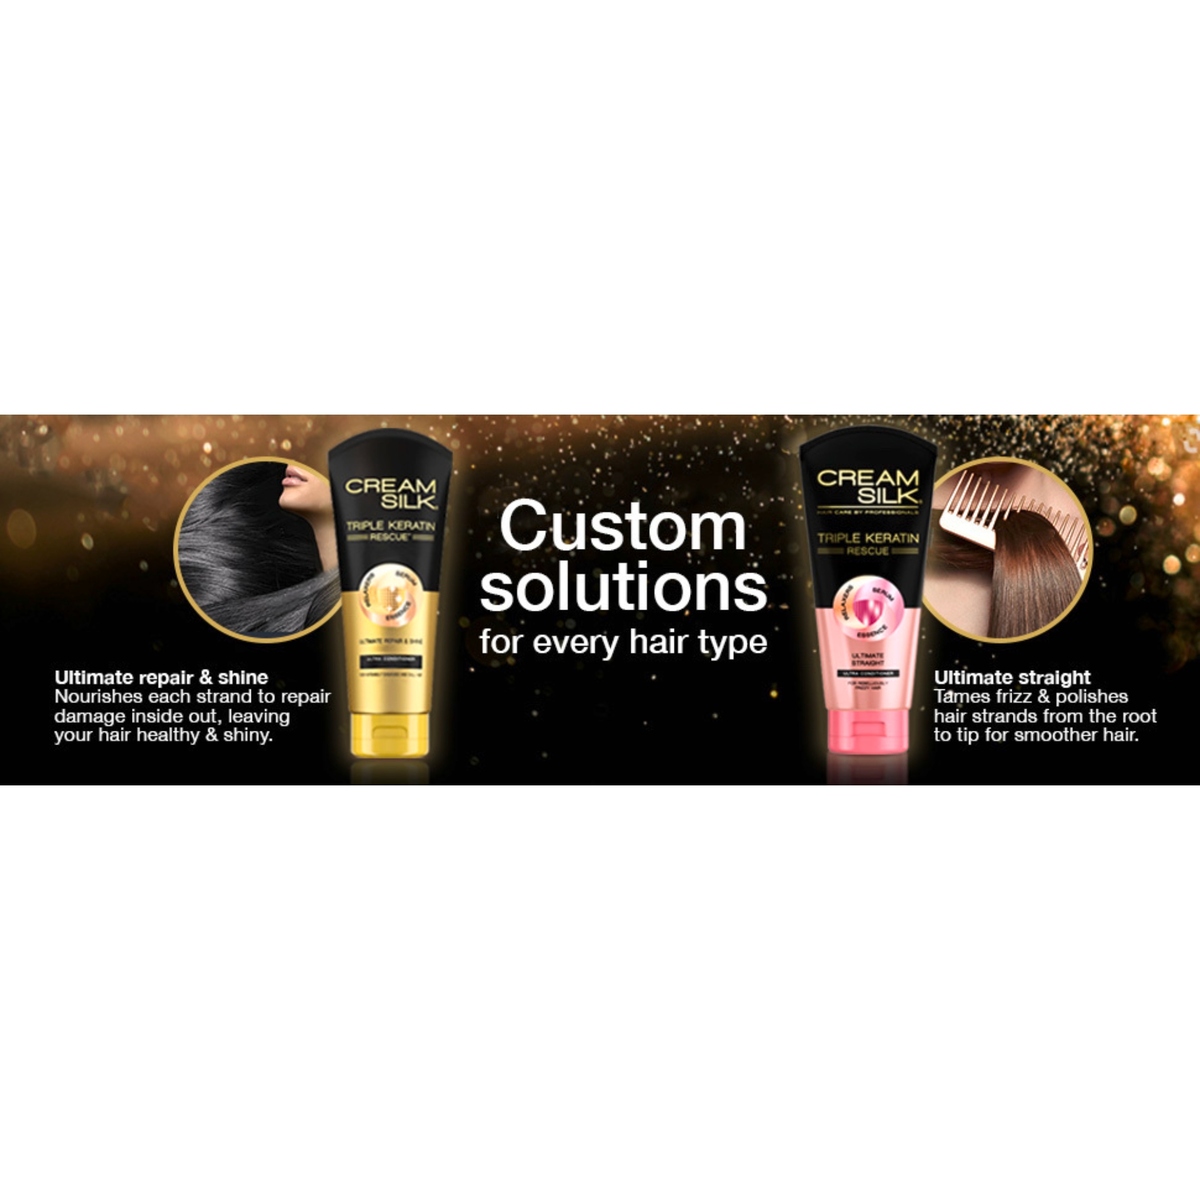 Cream Silk Triple Keratin Rescue Ultimate Repair  Shine Conditioner 170ml  Online at Best Price Conditioners Lulu UAE